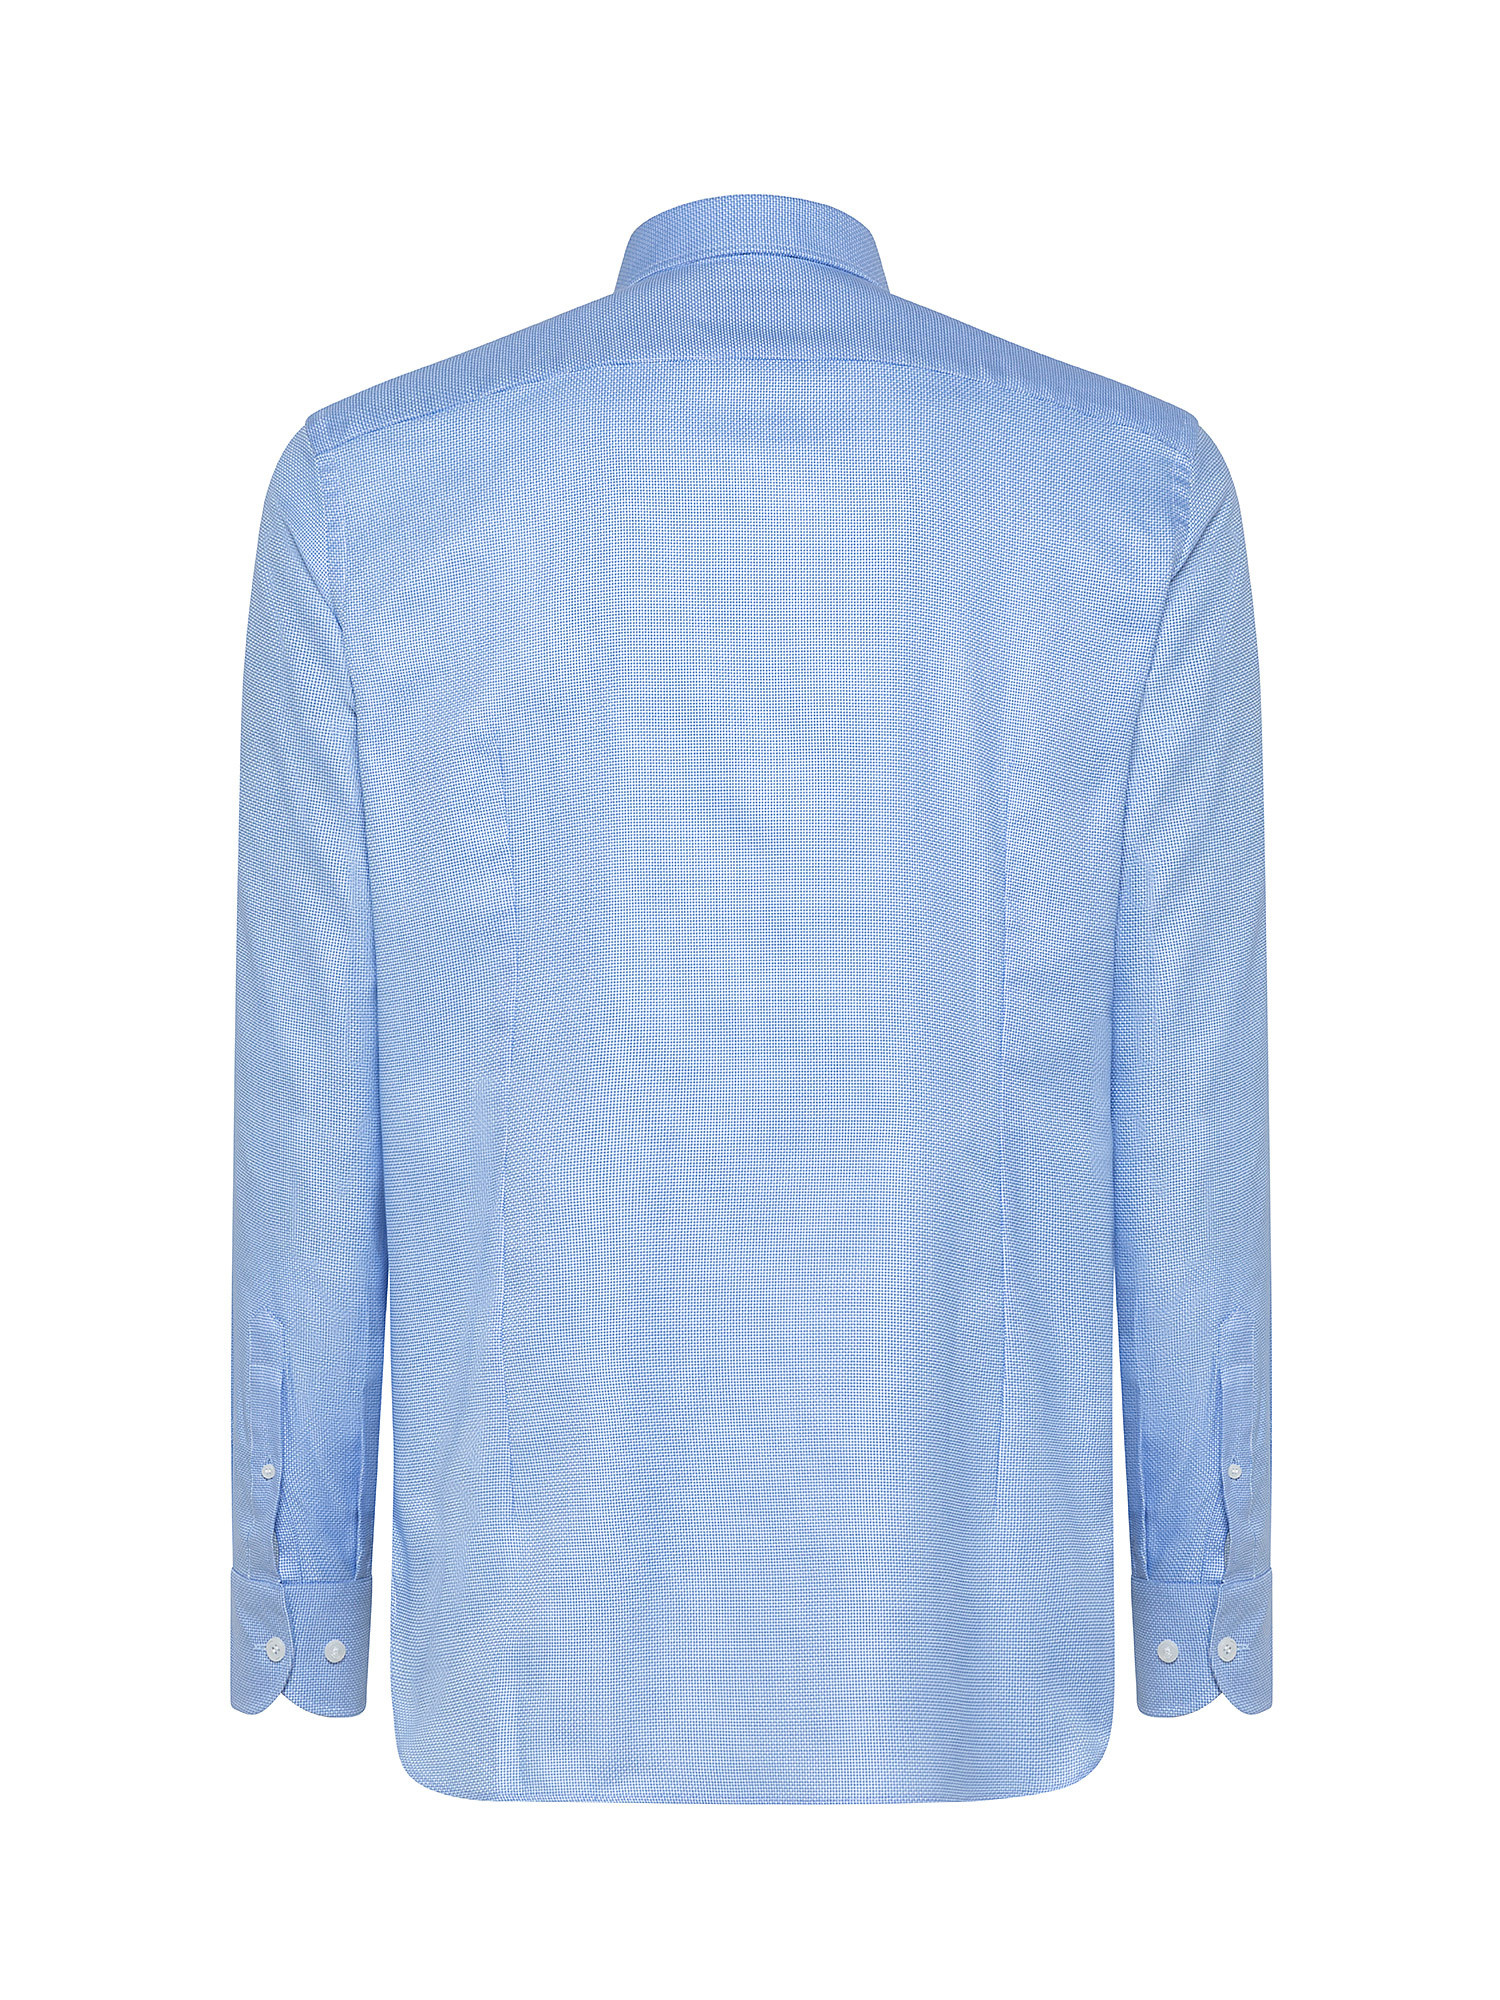 Camicia slim fit in cotone doppio ritorto, Azzurro, large image number 1